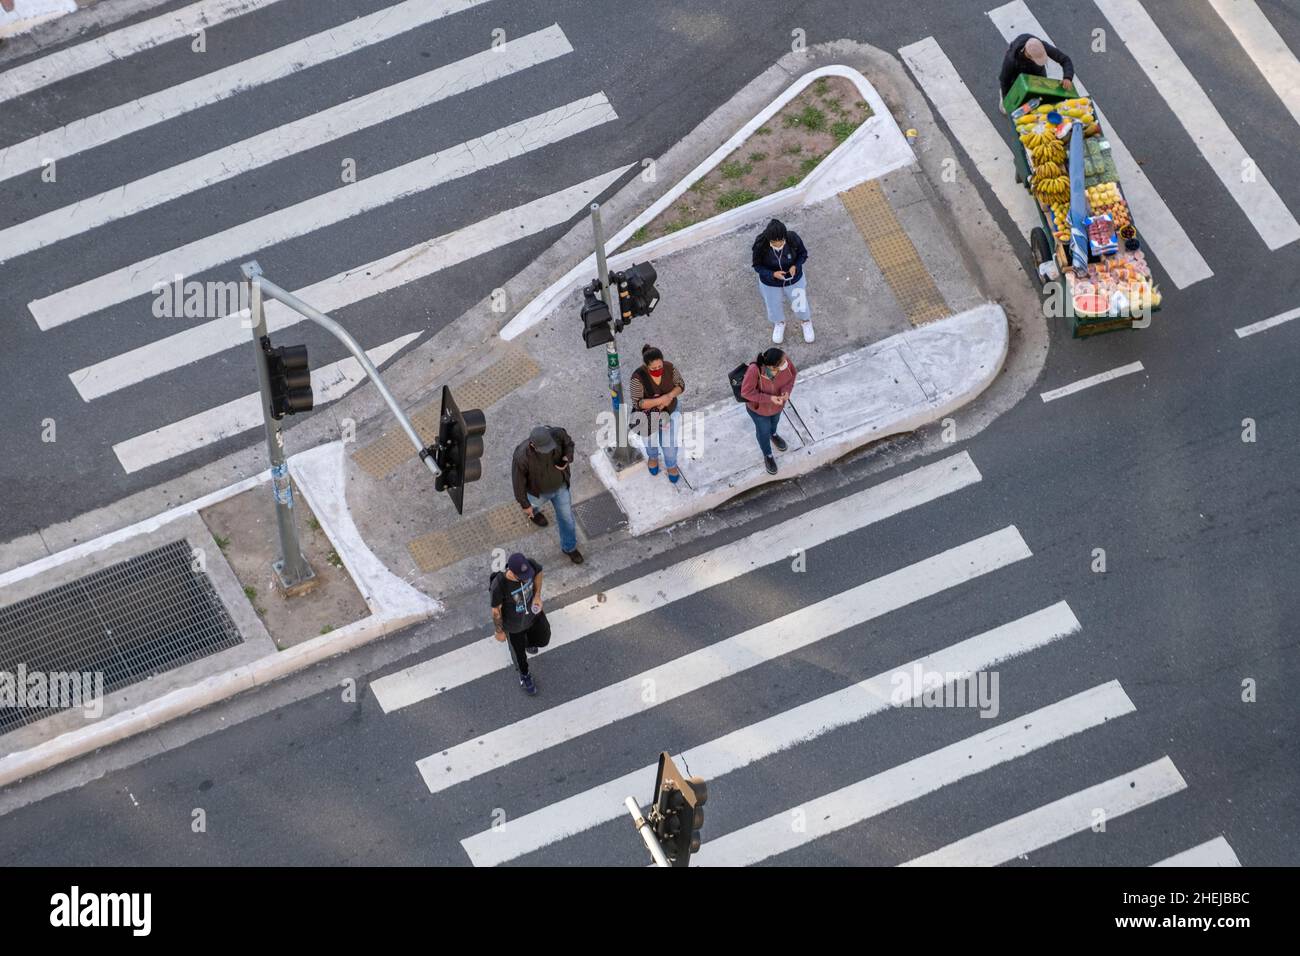 Vista aerea di un attraversamento pedonale / traversata in America Latina, persone incidentali. Foto Stock